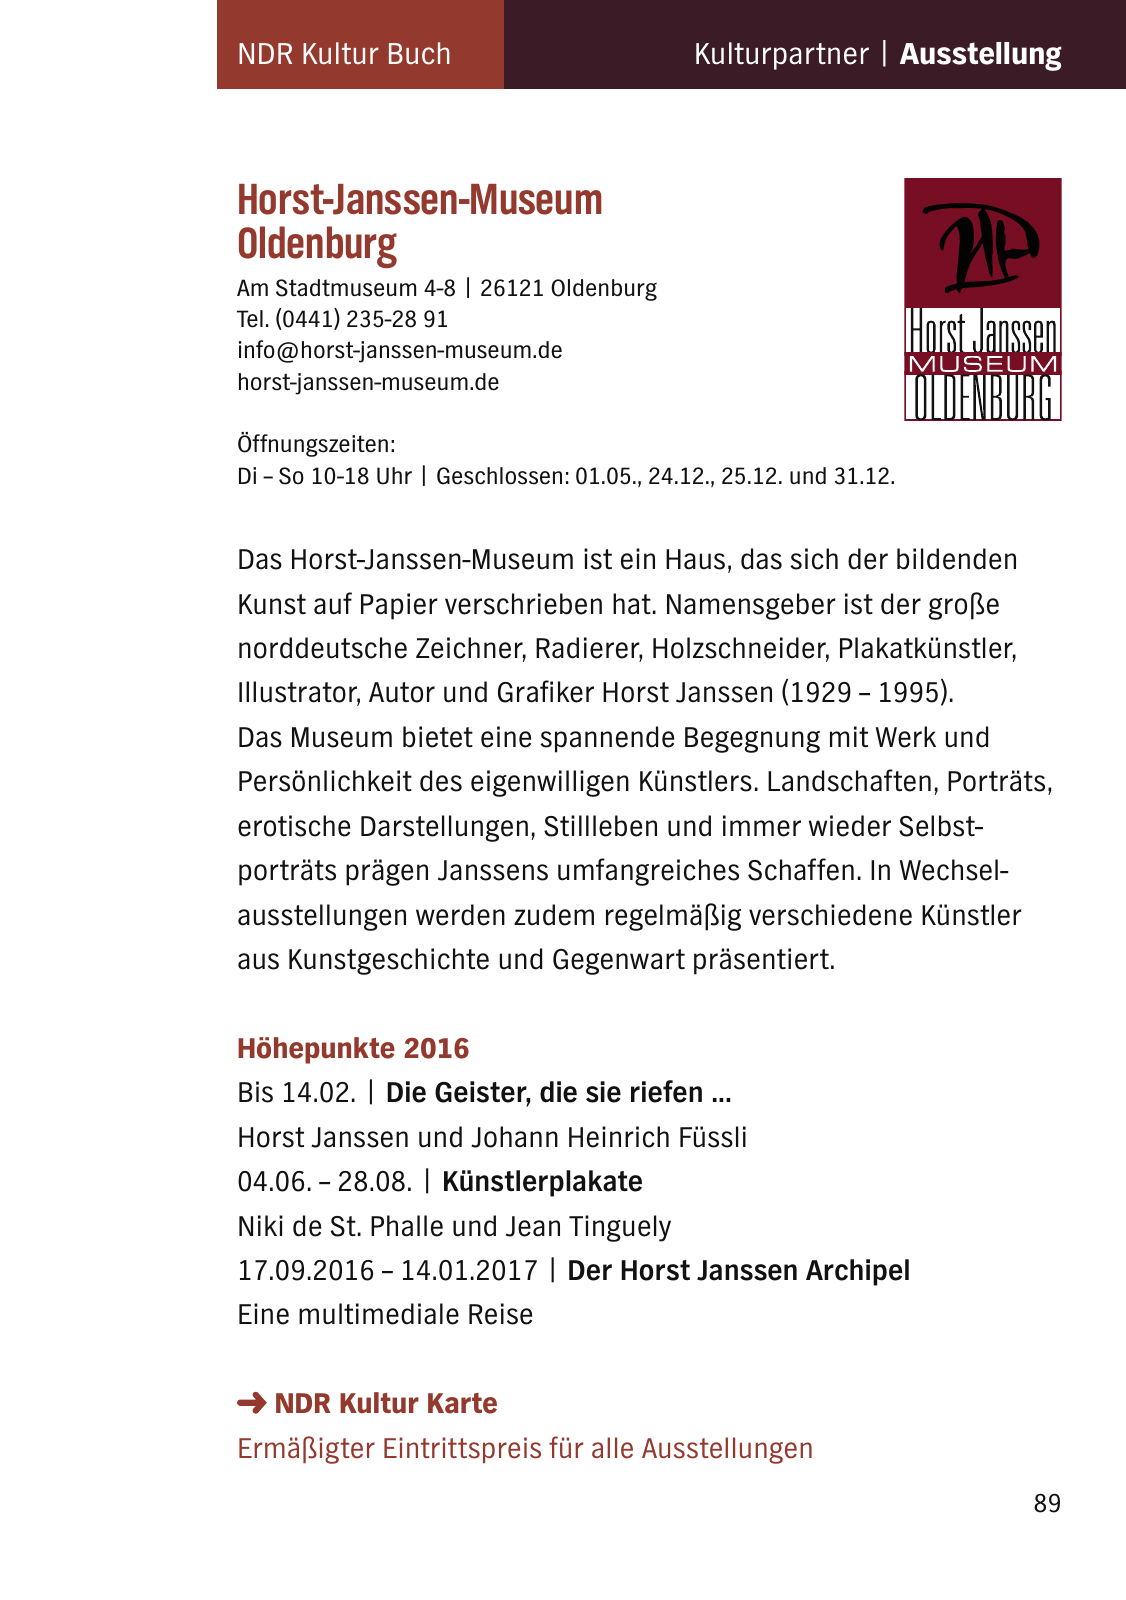 Vorschau NDR Kultur Buch 2016_aktualisiert Seite 91